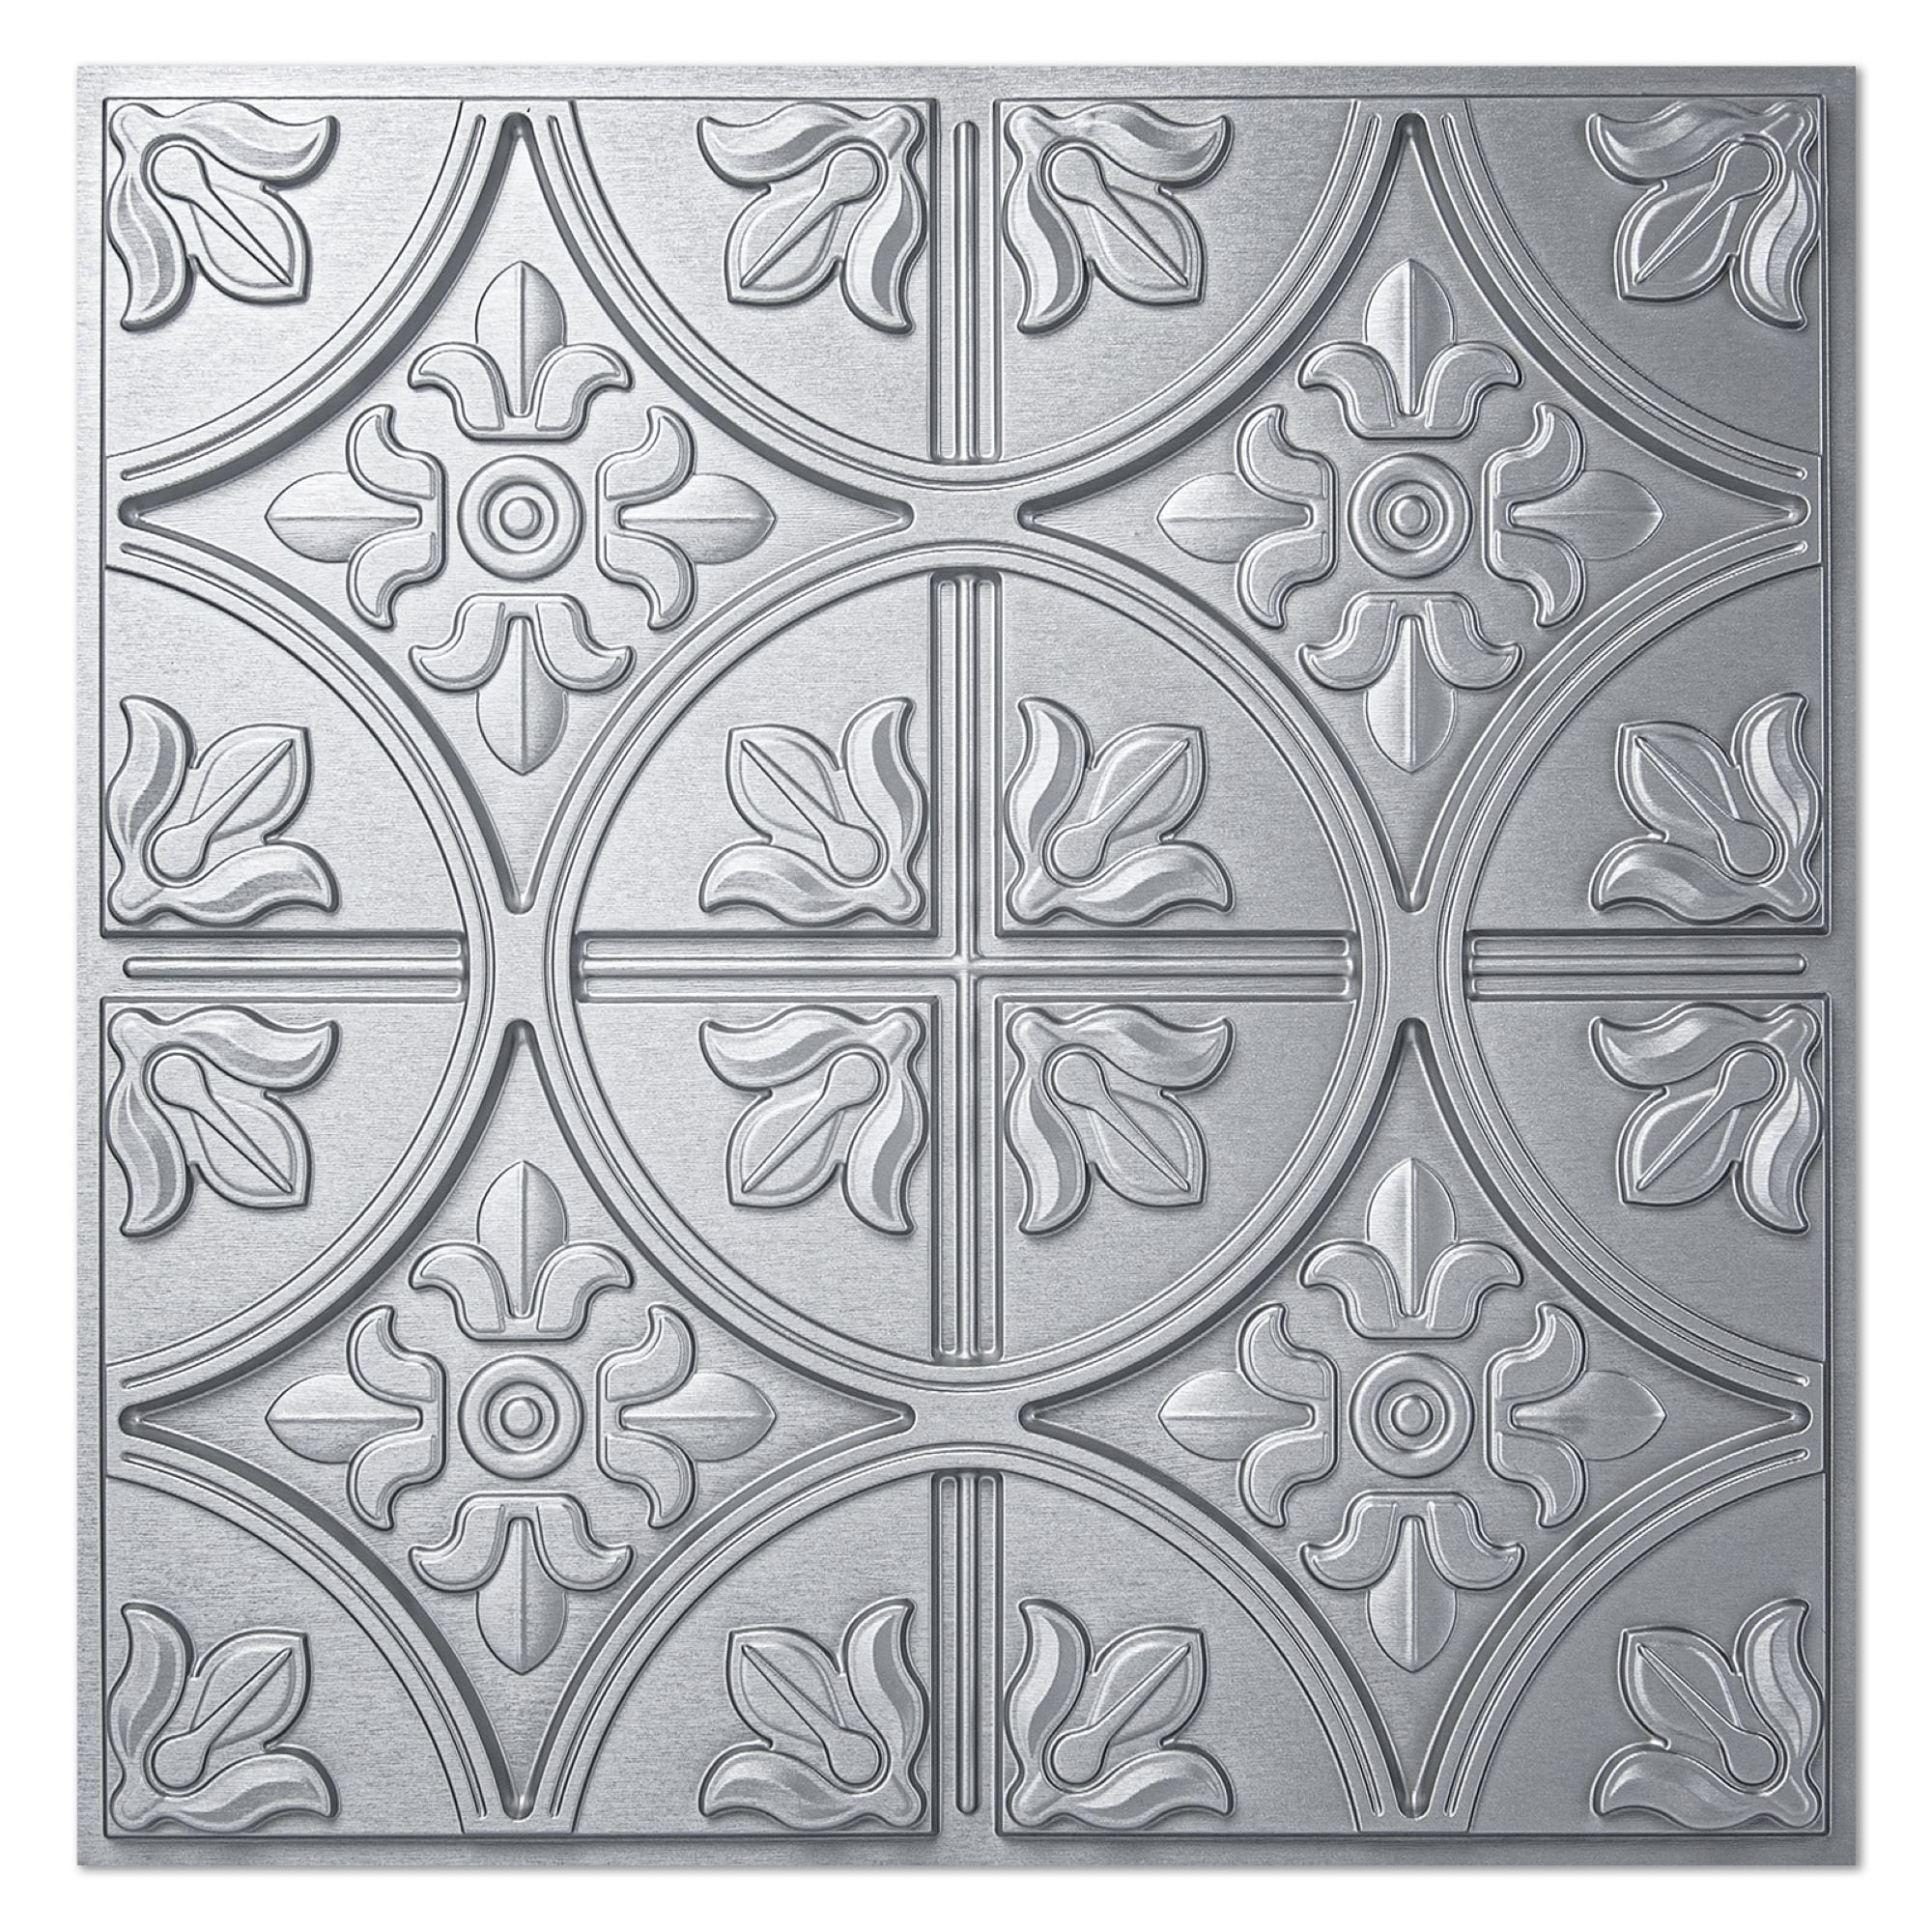 Art3d 2x2 ft. PVC Ceiling Tile, Fancy Classic Style in Argent Sliver,12 pcs  On Sale Bed Bath  Beyond 38117868